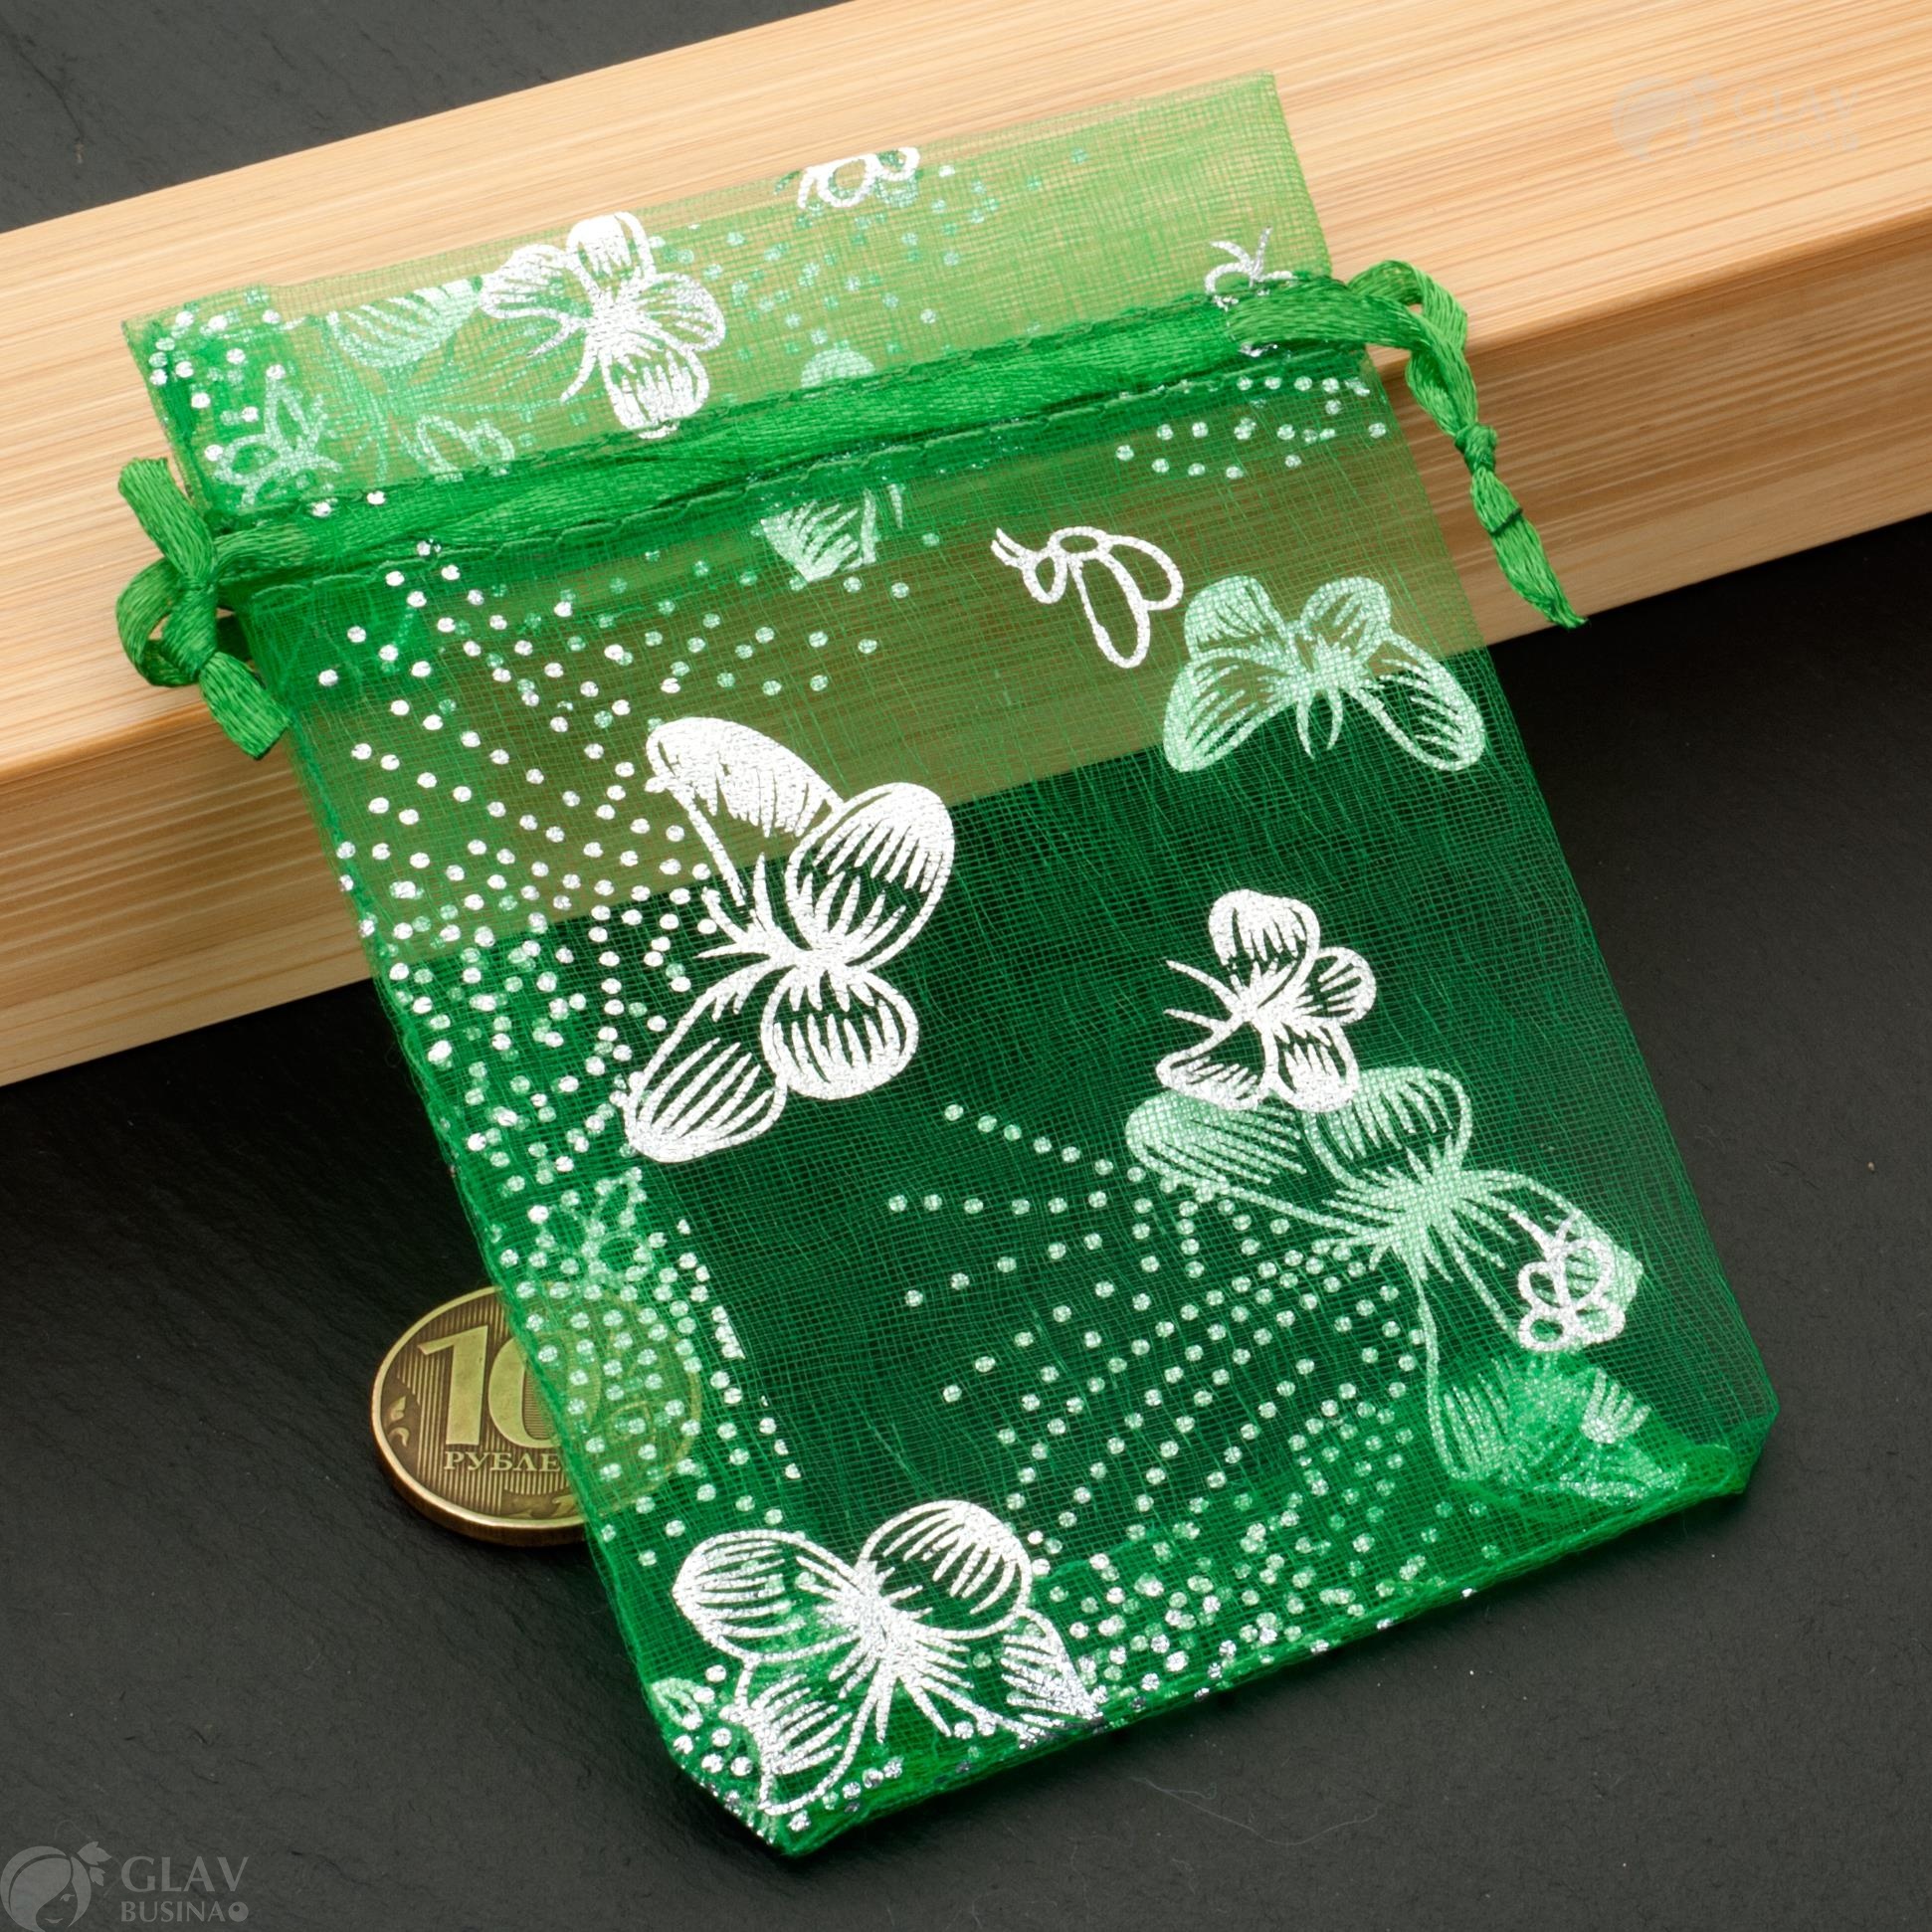 Элегантные мешочки из органзы с зелеными бабочками, размером 8х11см, идеальное дополнение для создания украшений. Надёжное качество и отличный выбор для вашего проекта.